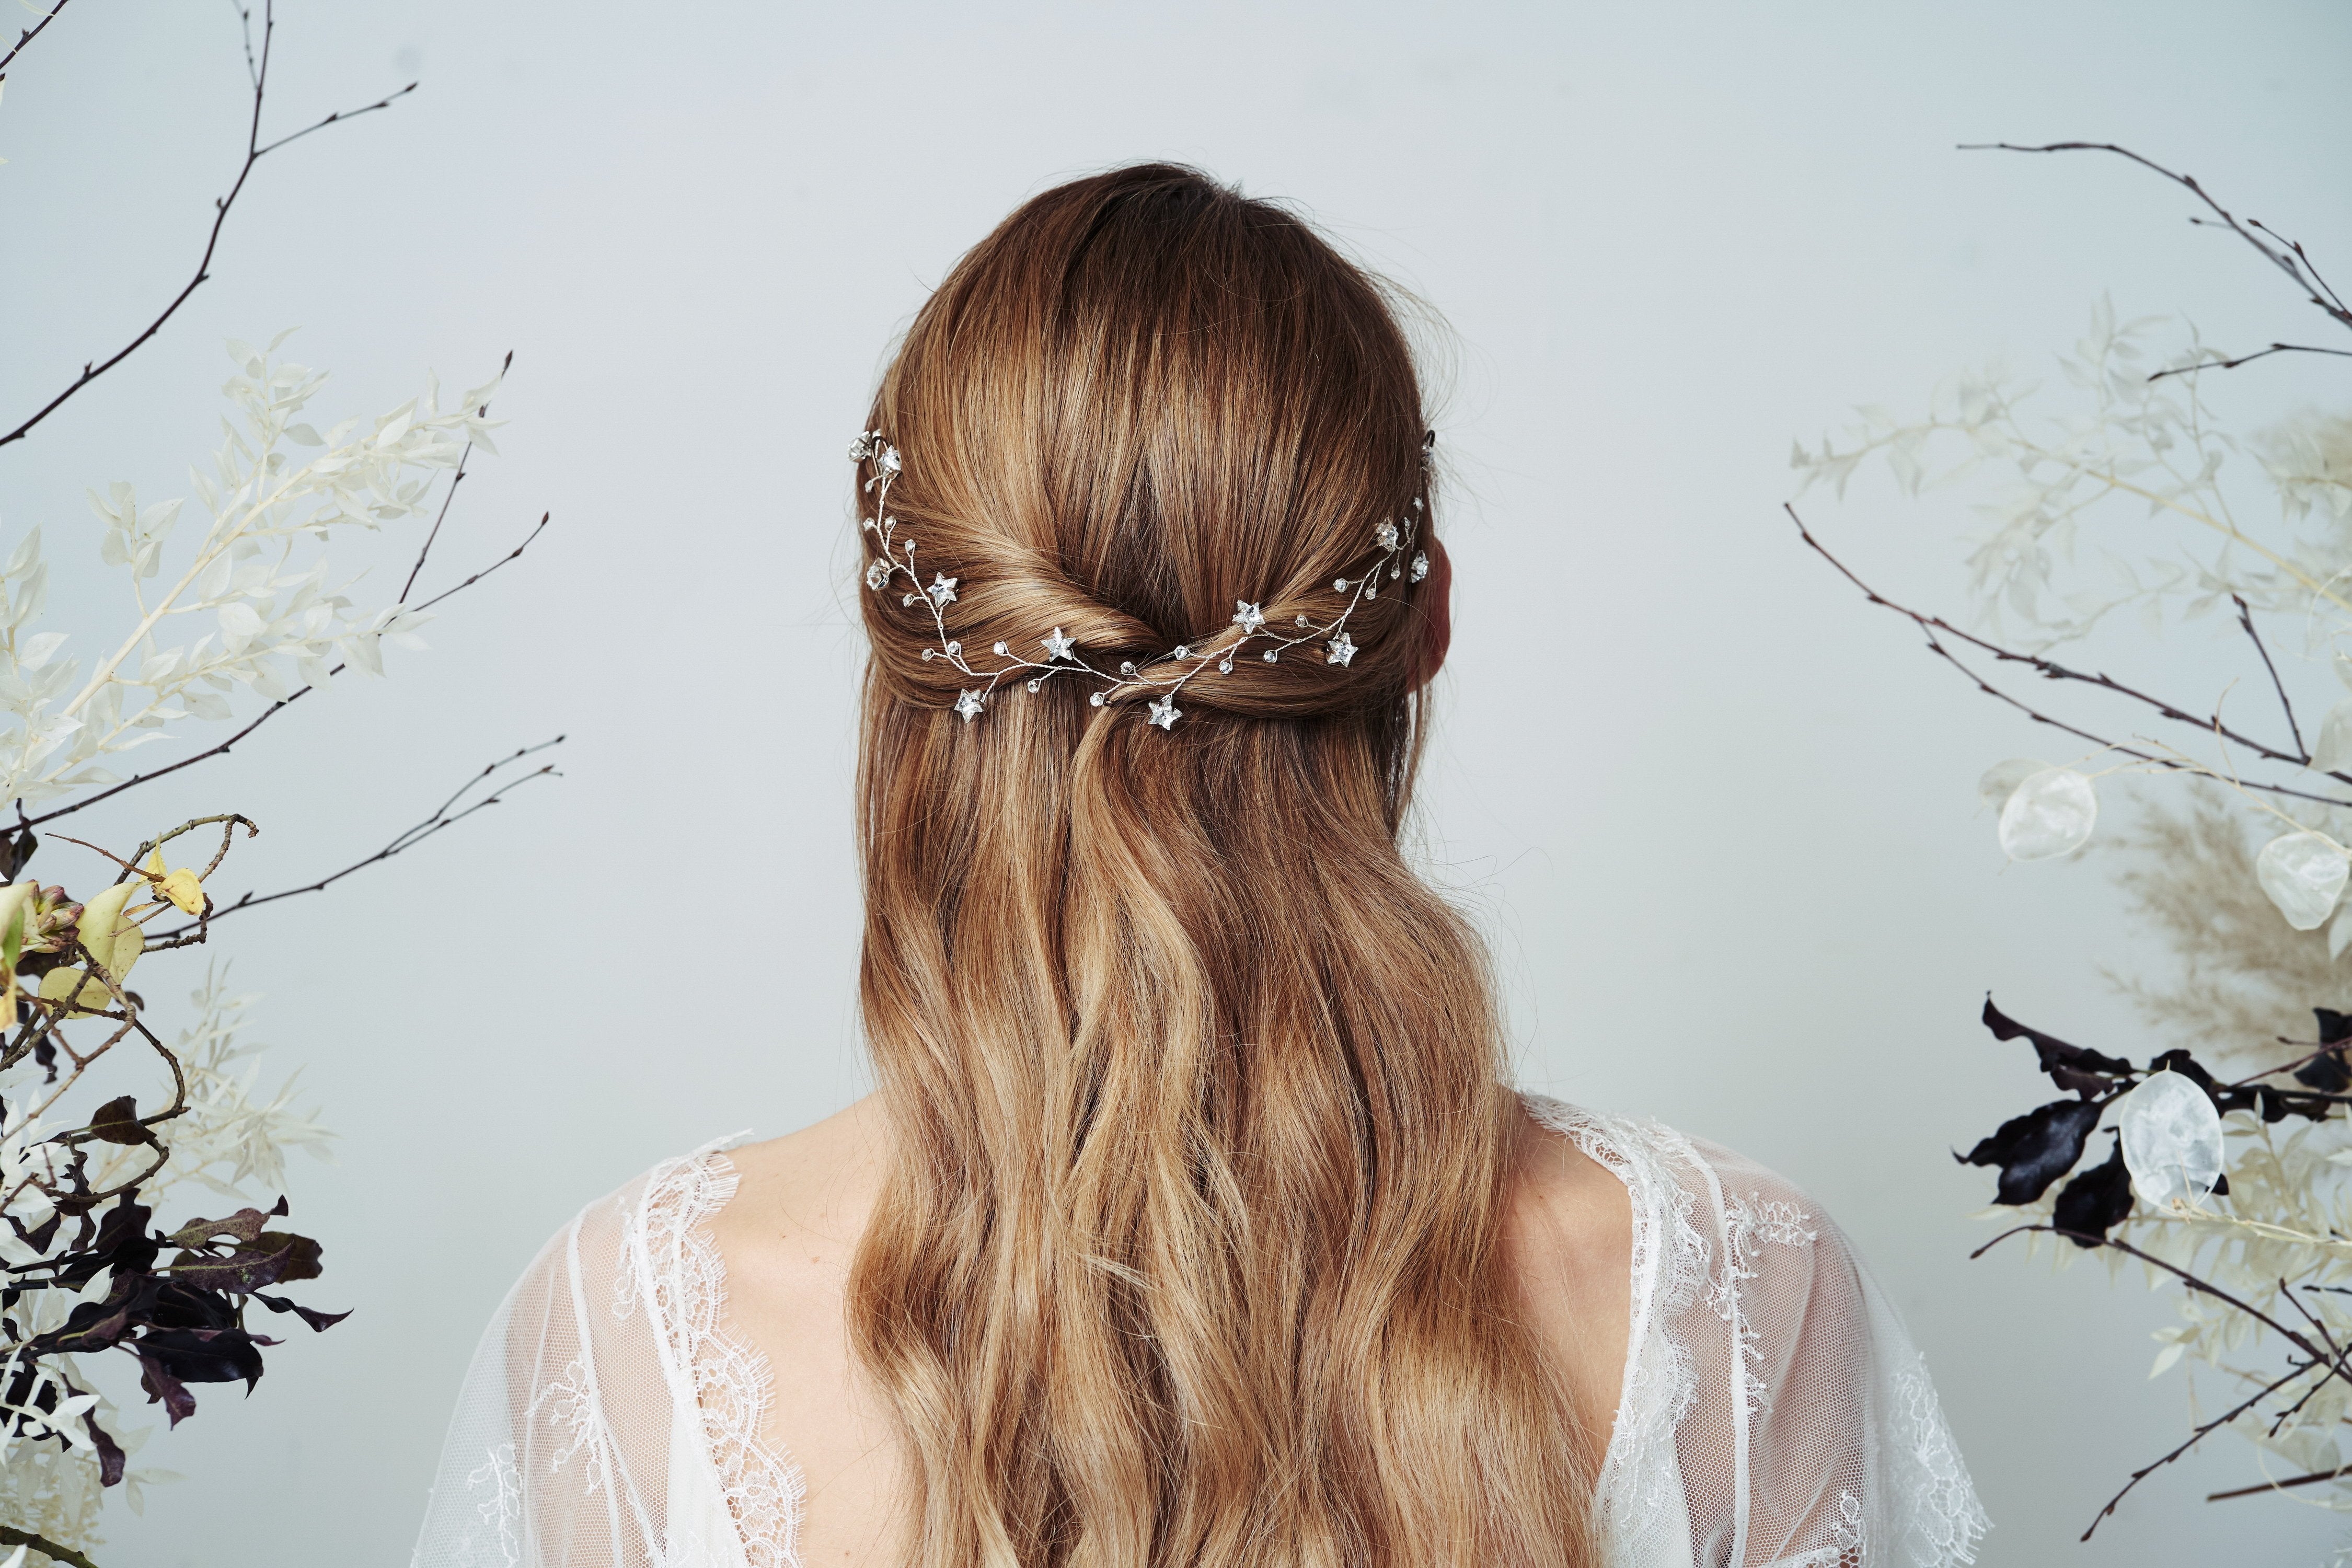 Swarovski star bridal hairvine Larissa worn with half up do